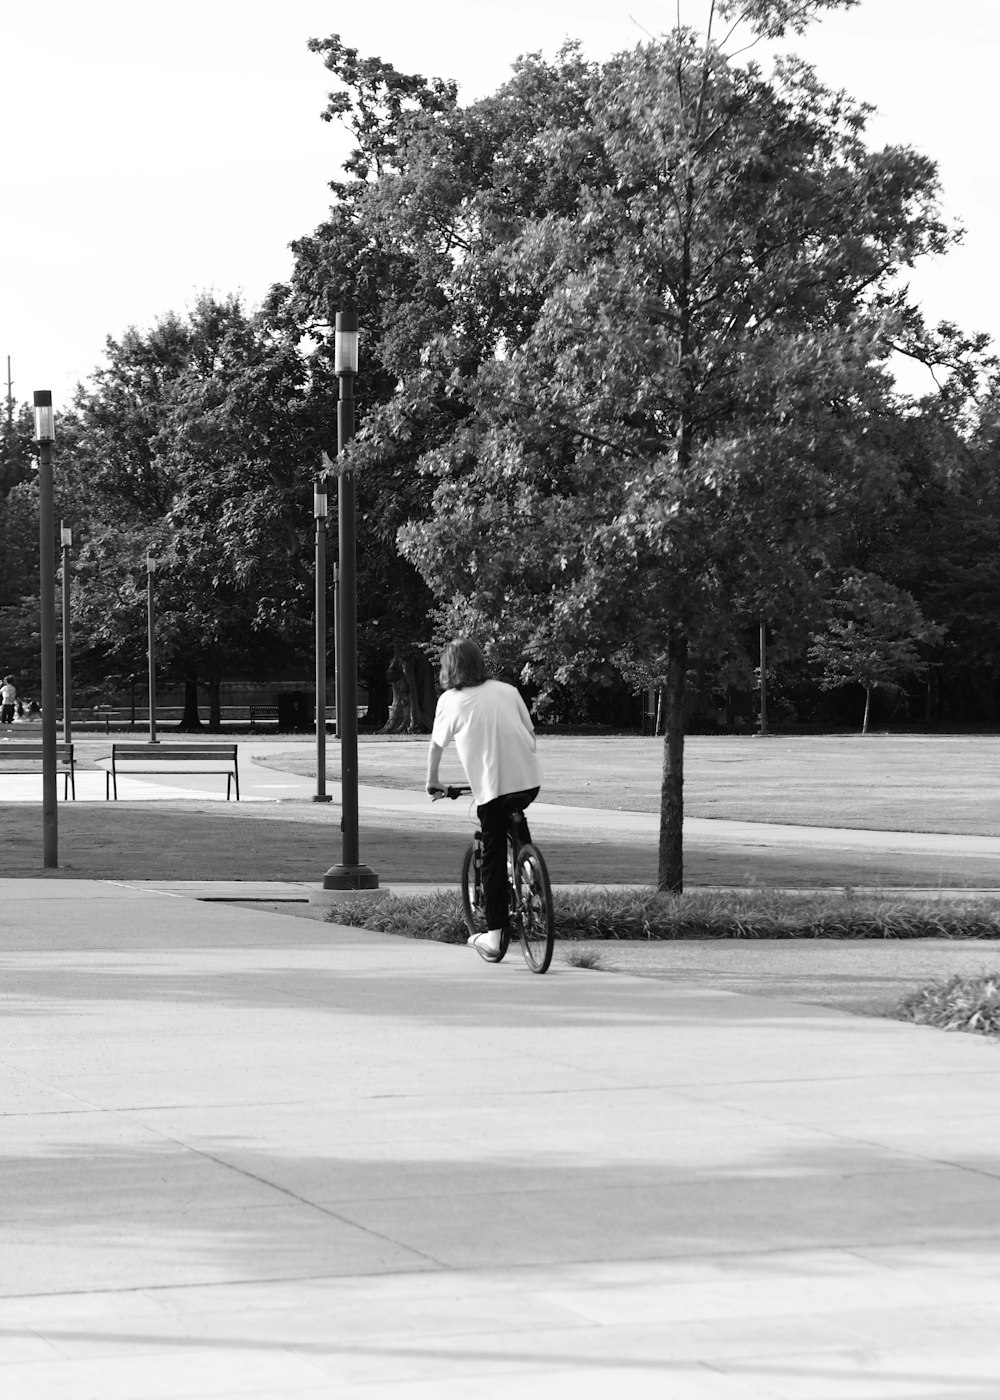 한 남자가 자전거를 타고 공원 옆 거리를 걷고 있다